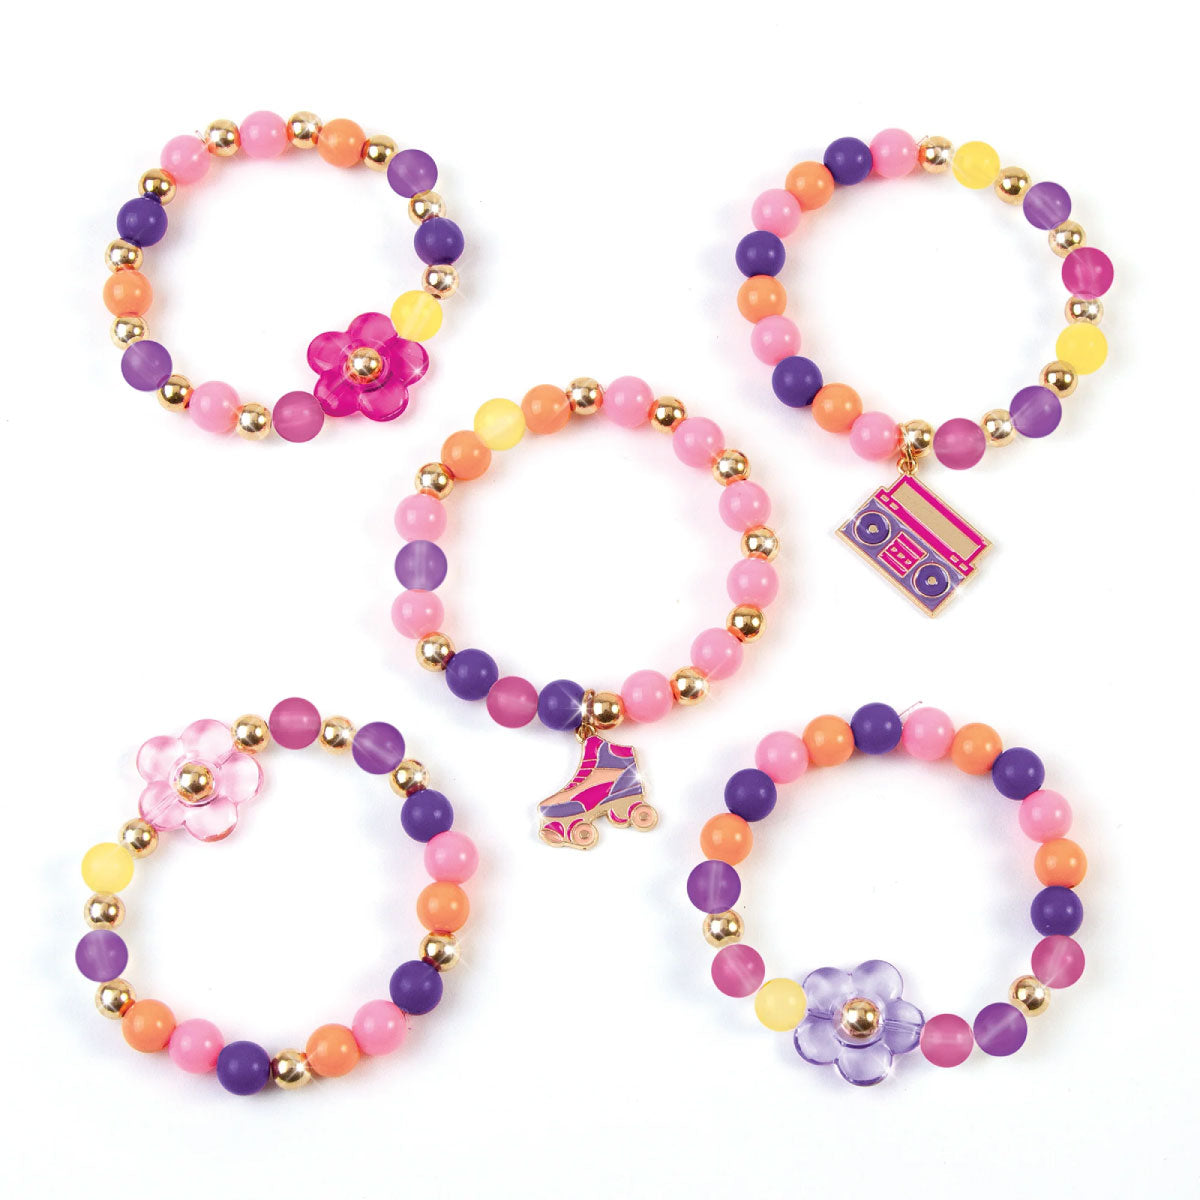 Make It Real Color Reveal DIY Bracelets Kit